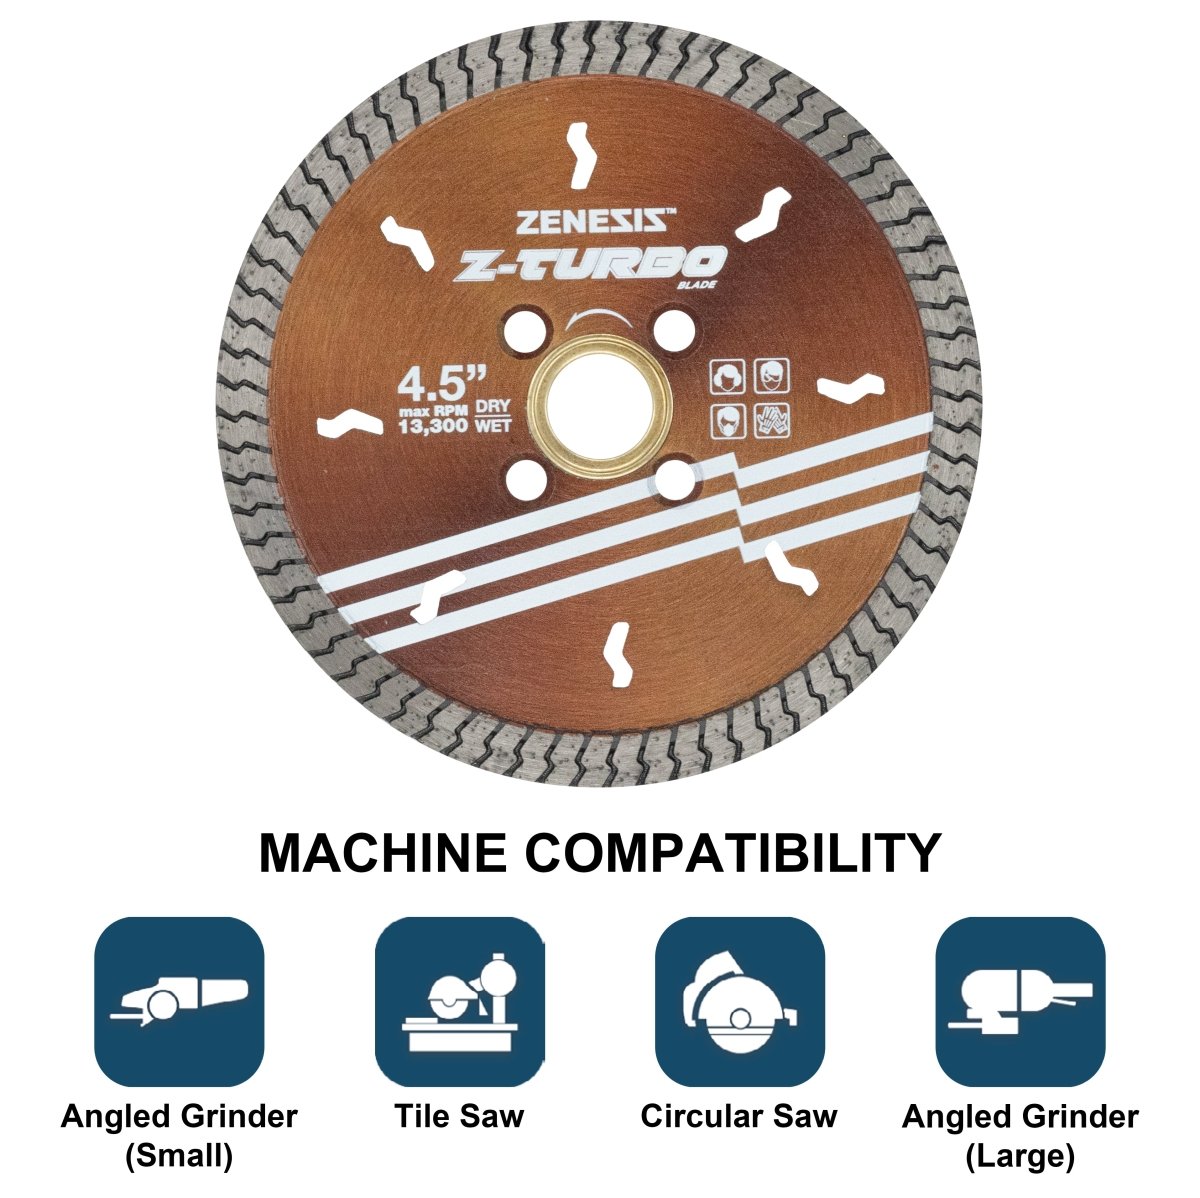 ZENESIS™ Z-TURBO Diamond Blade Machine Compatibility